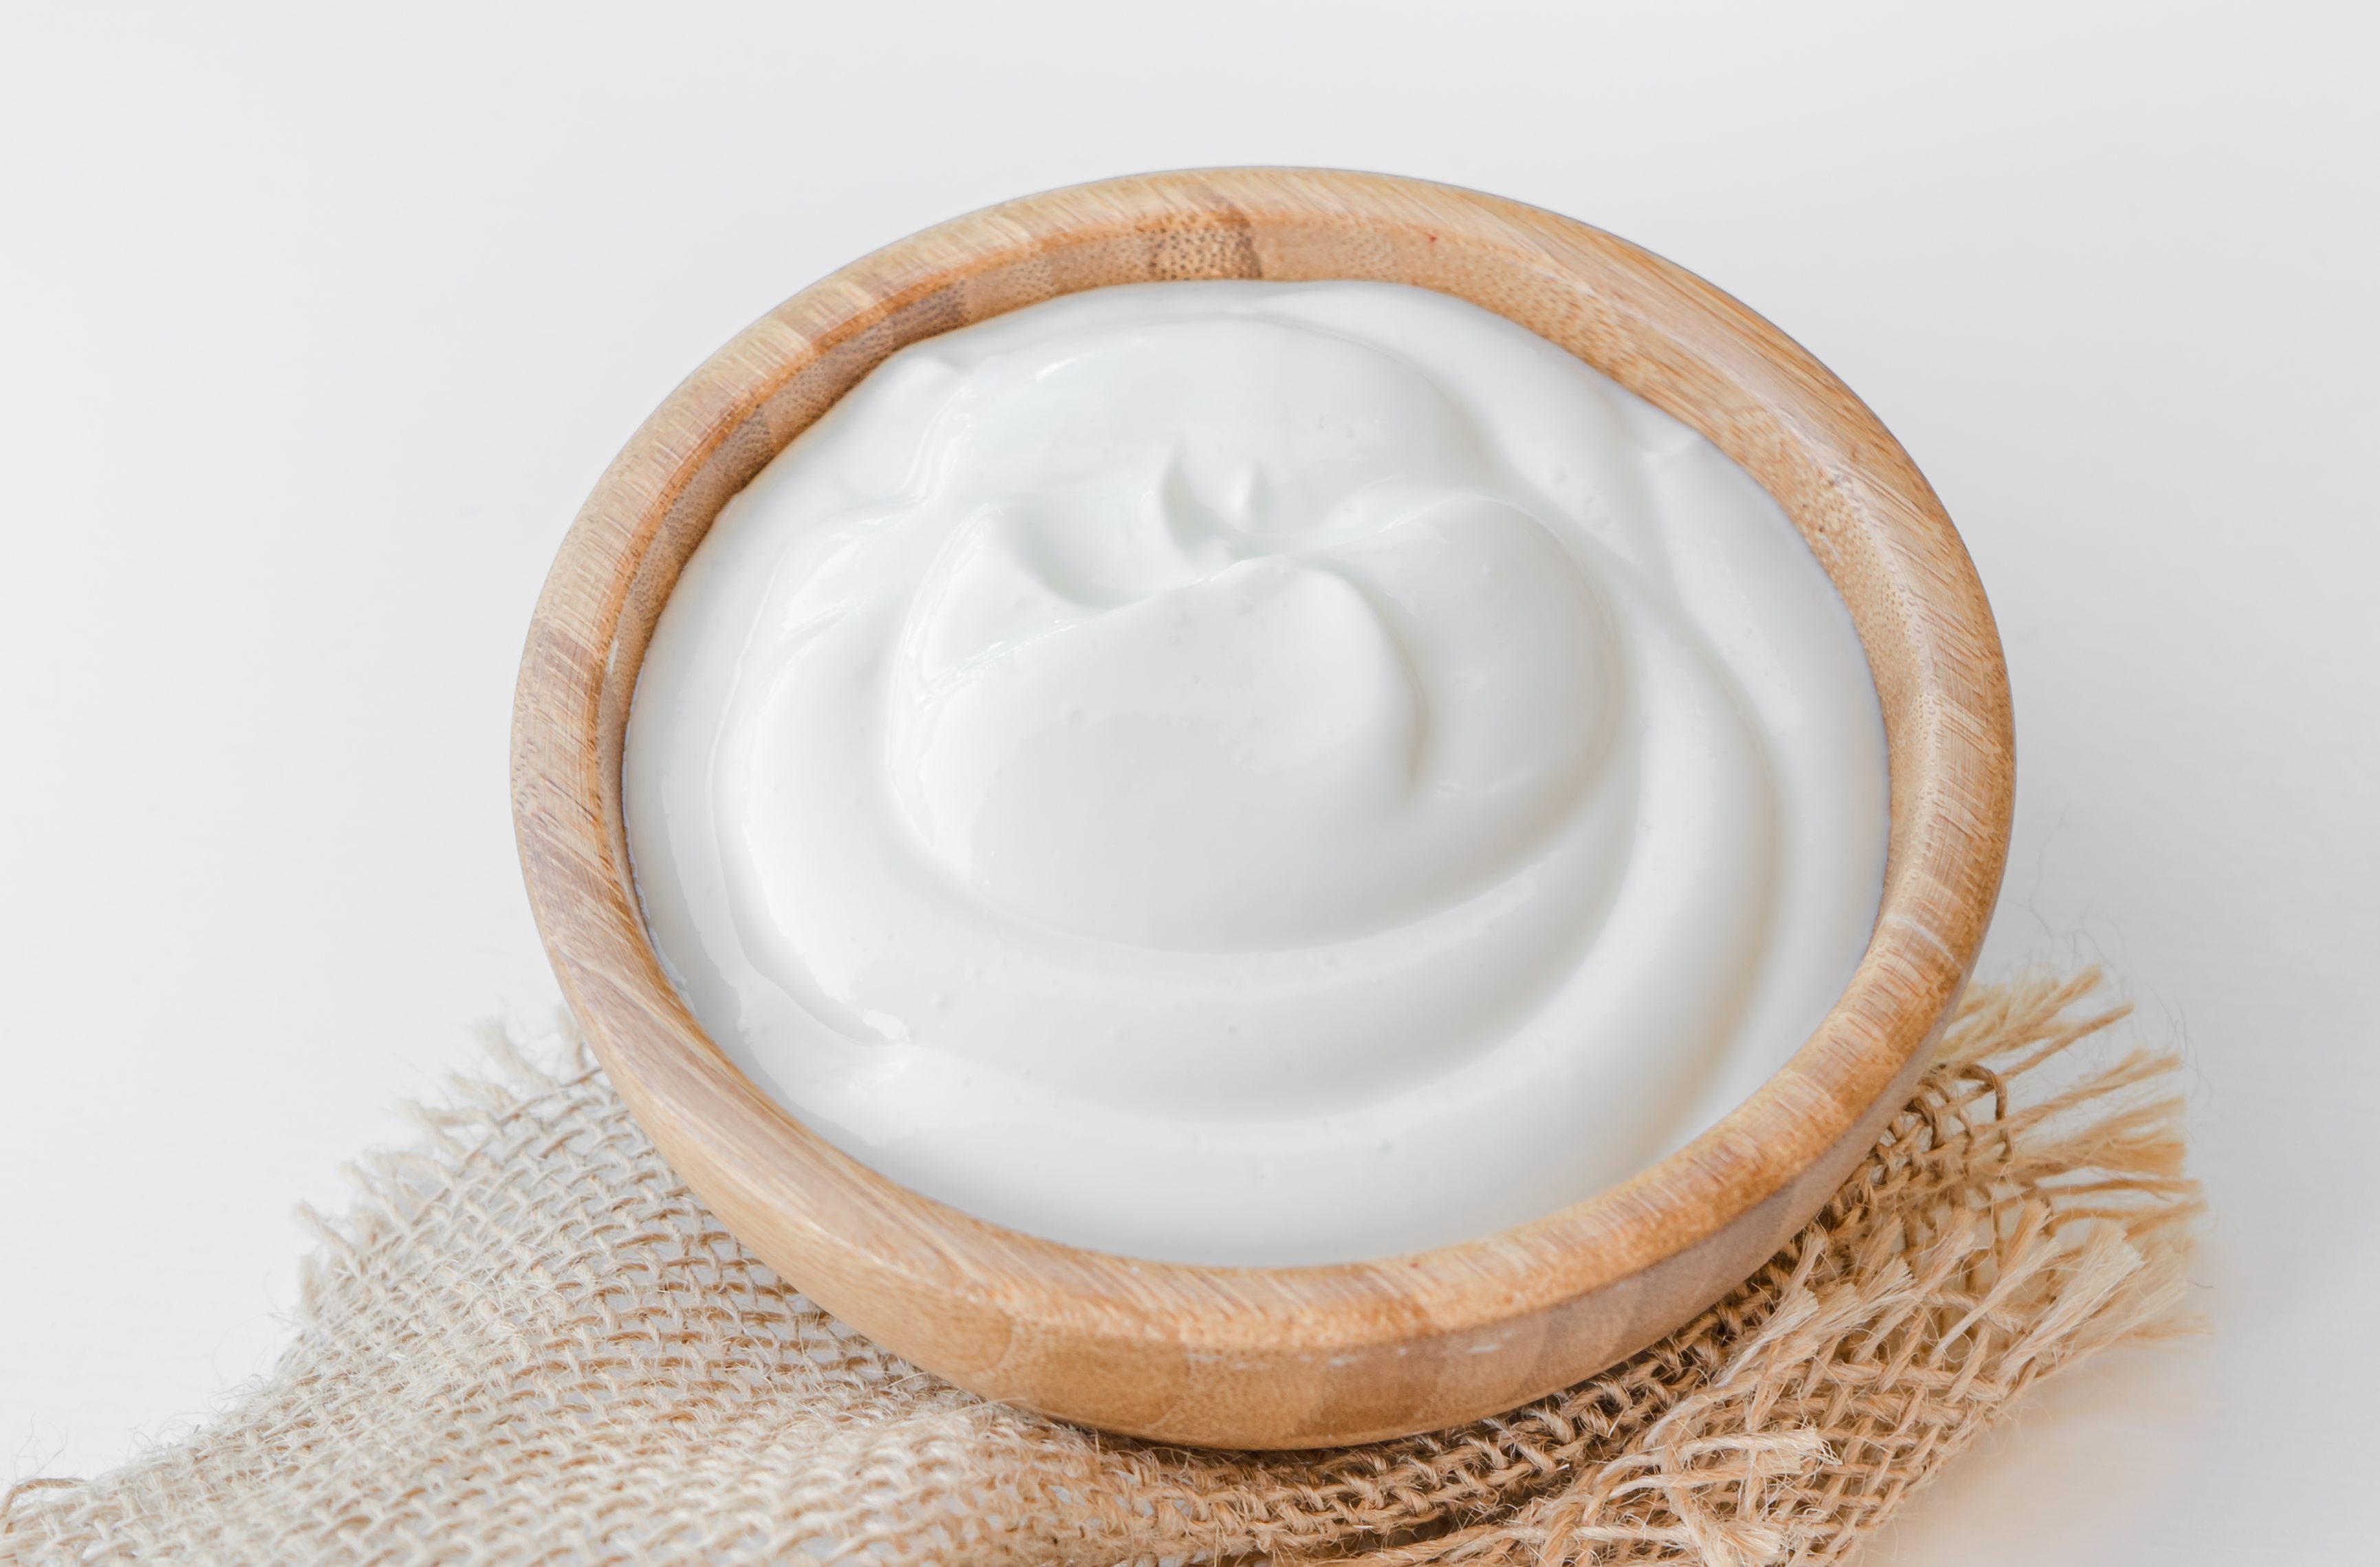 Applying Greek yogurt works better than shaving cream for sunburn